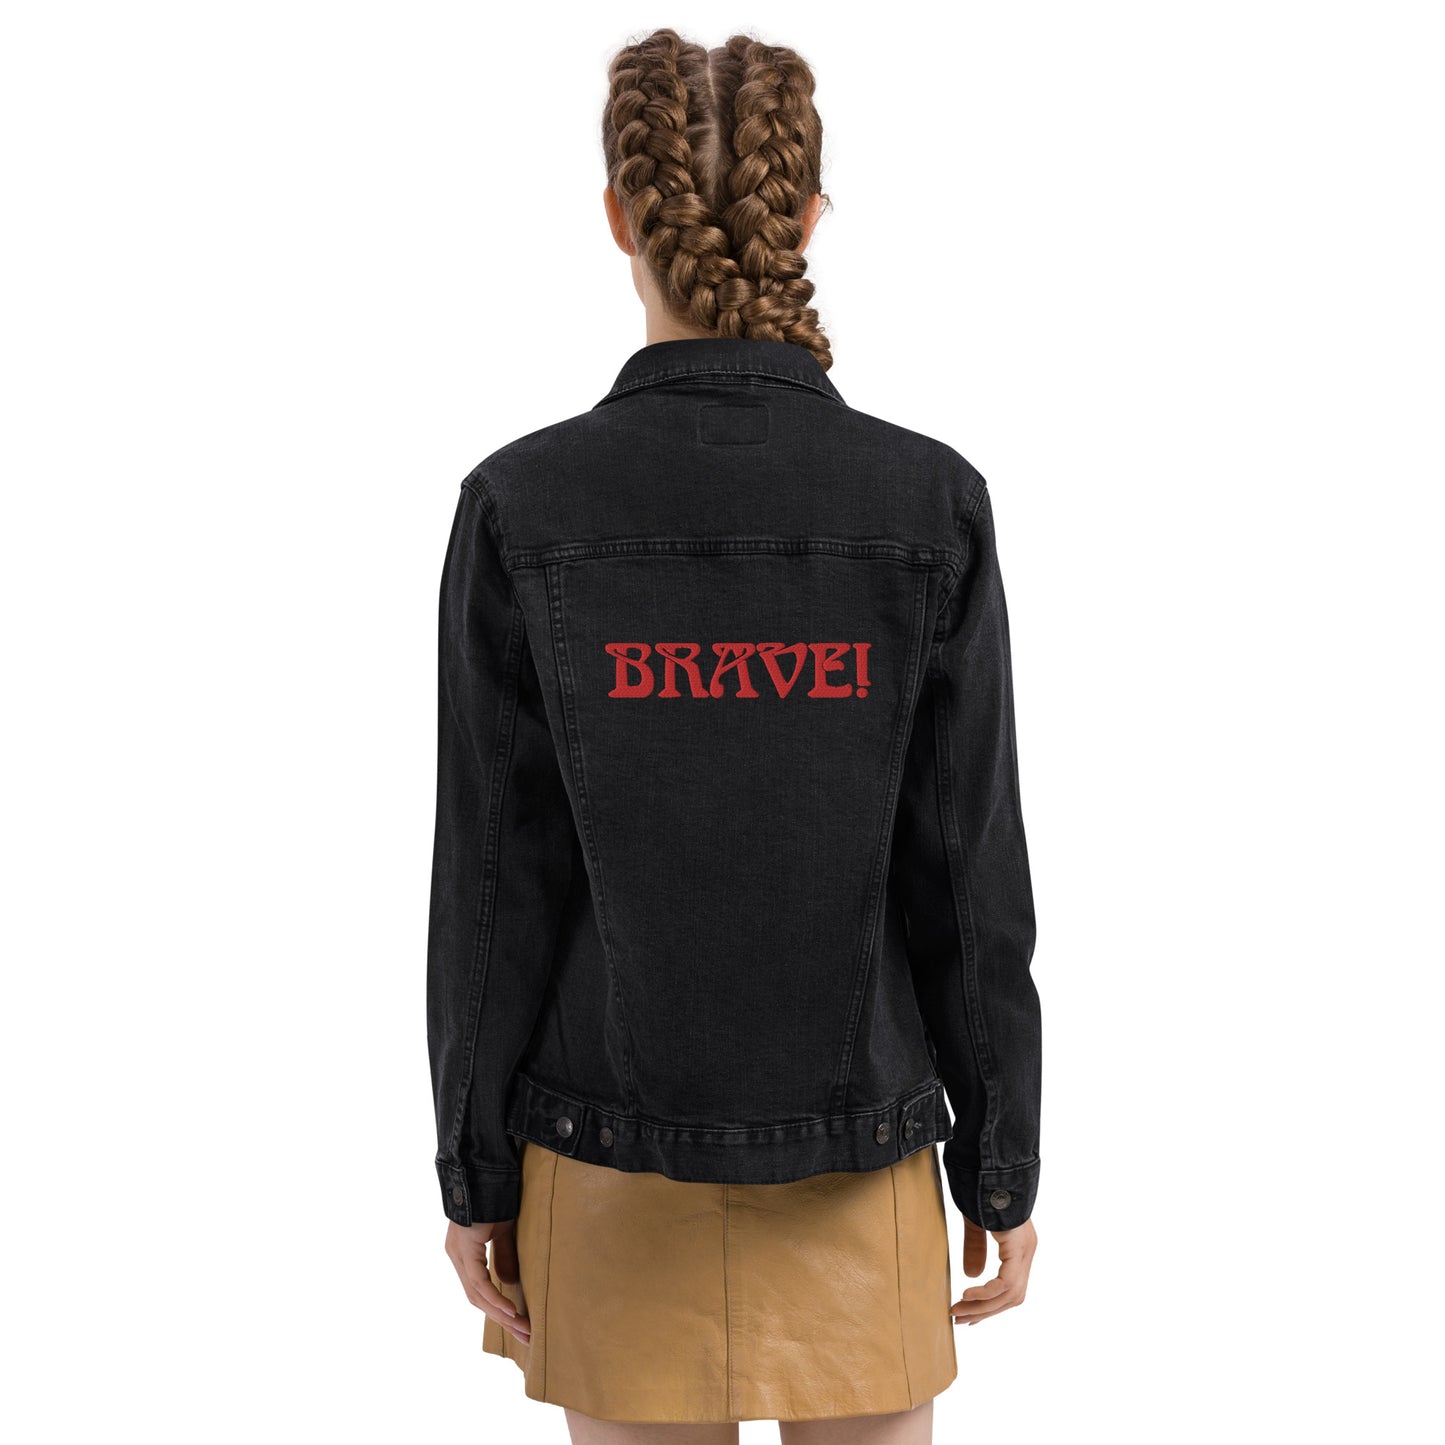 “BRAVE!”Unisex Denim Jacket W/Red Font